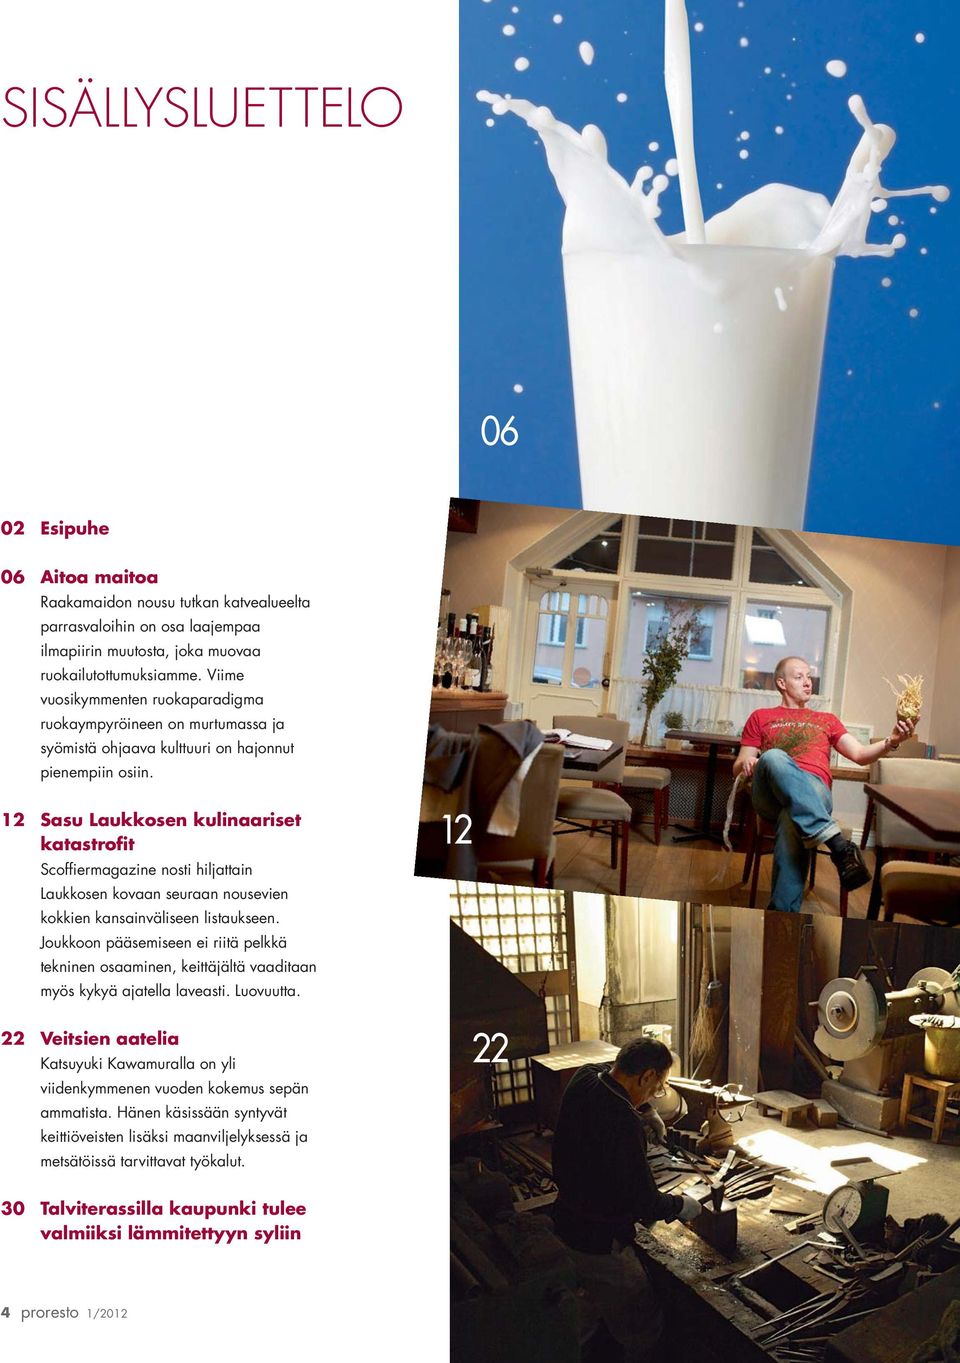 12 Sasu Laukkosen kulinaariset katastrofit Scoffiermagazine nosti hiljattain Laukkosen kovaan seuraan nousevien kokkien kansainväliseen listaukseen.